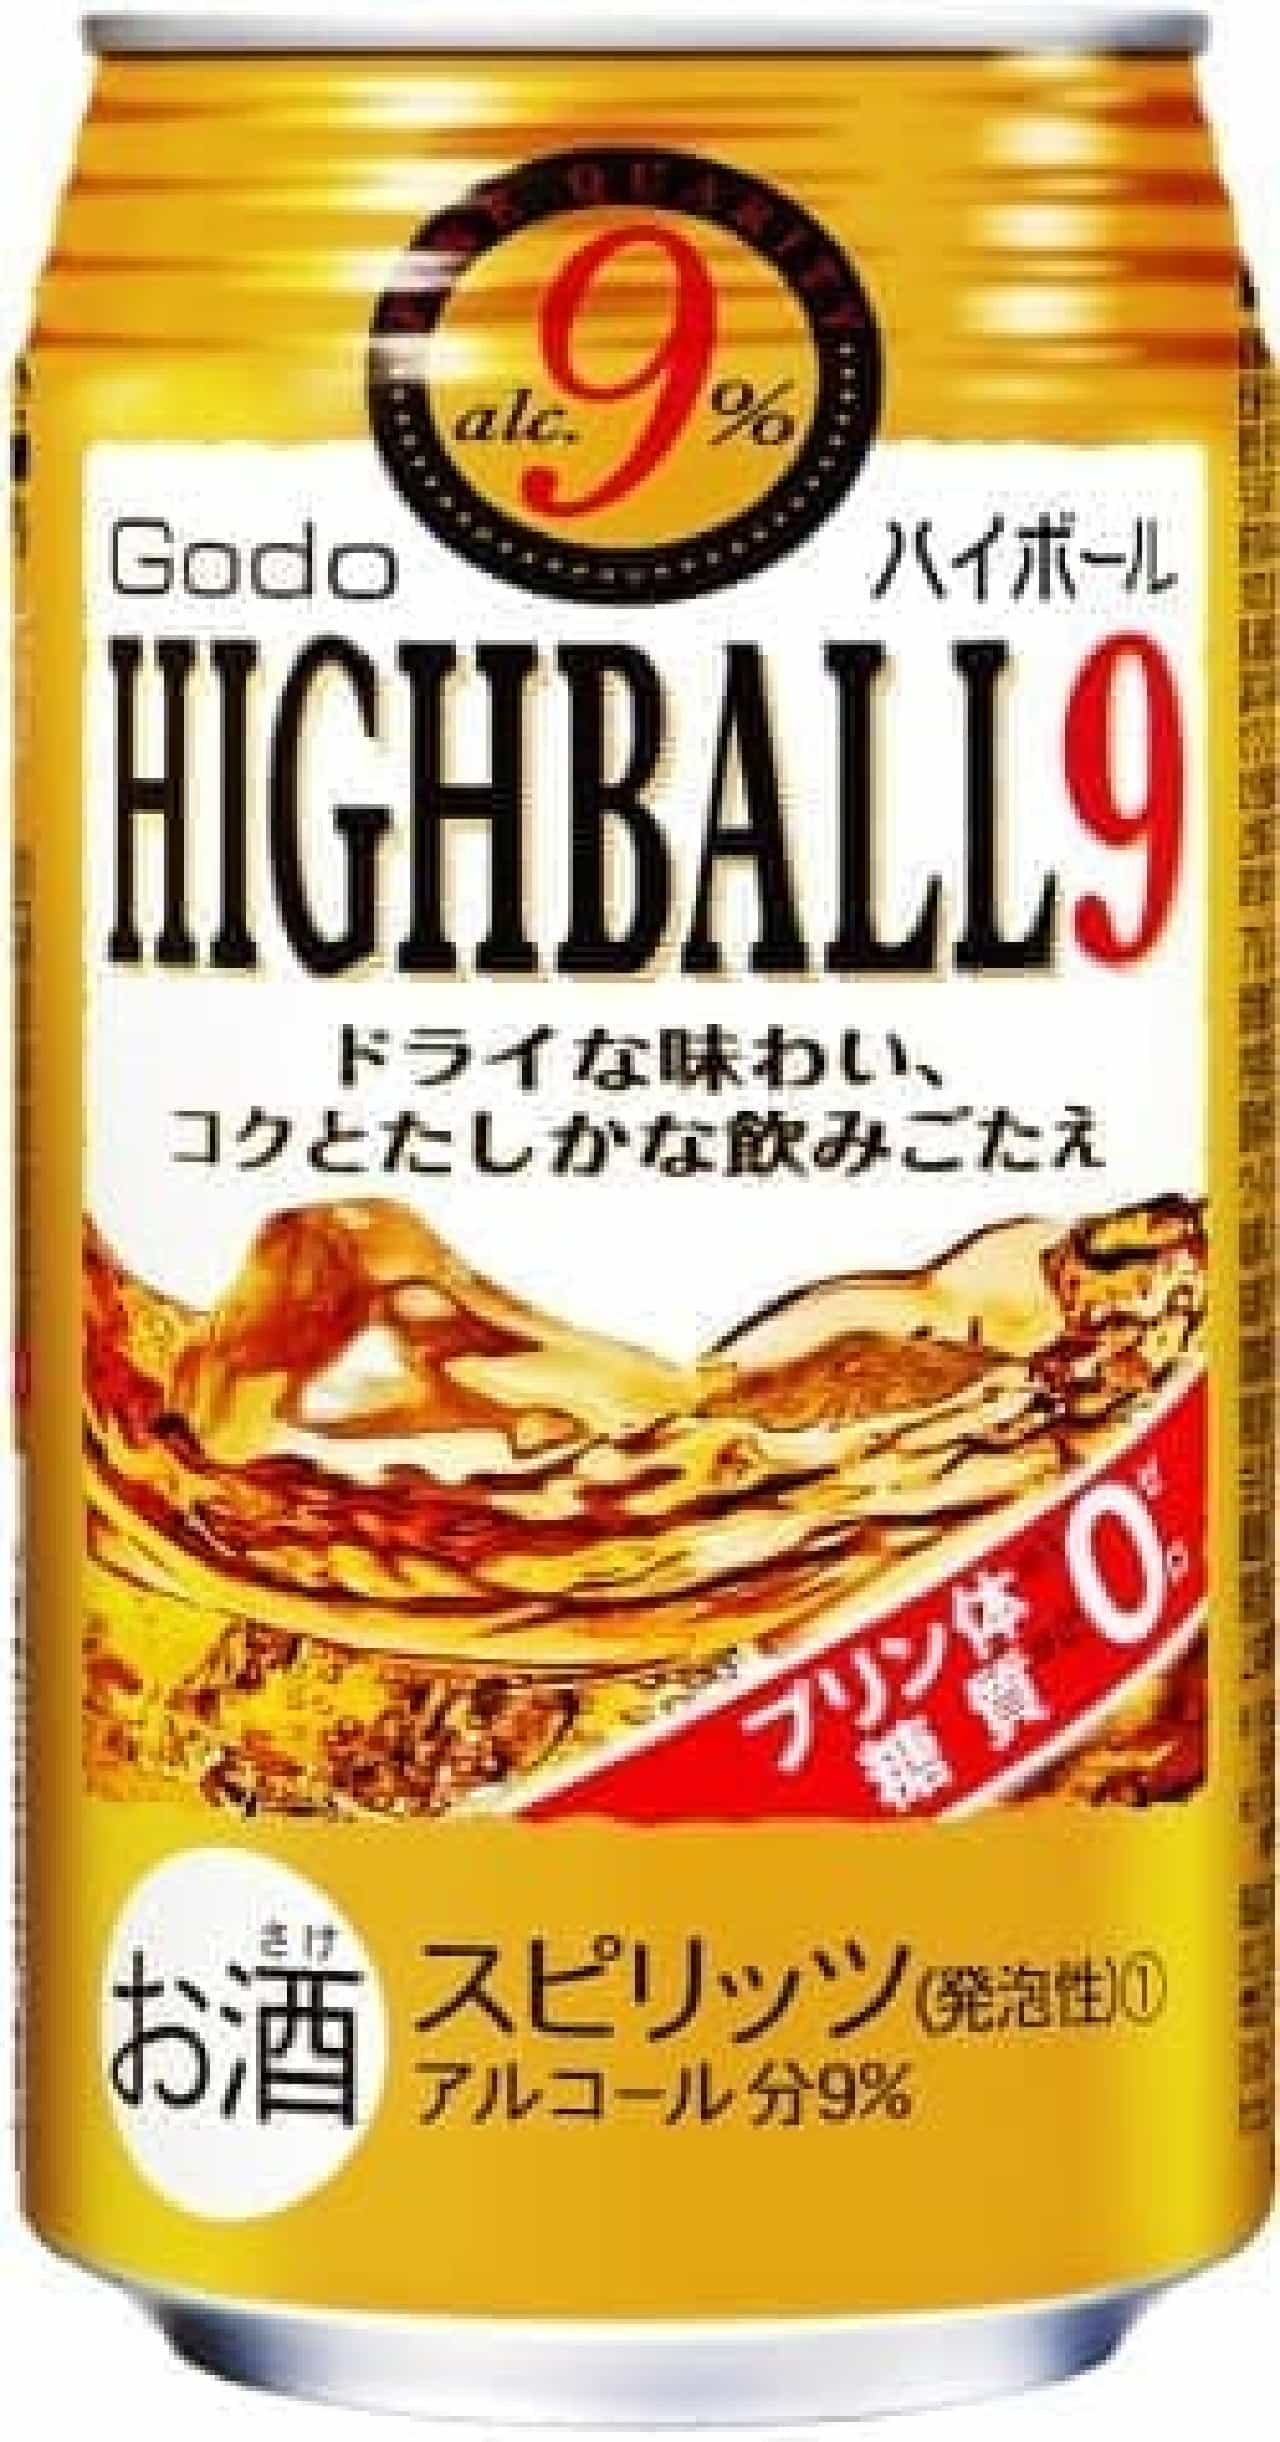 Joint Sake Spirit "GODO Highball 9%"